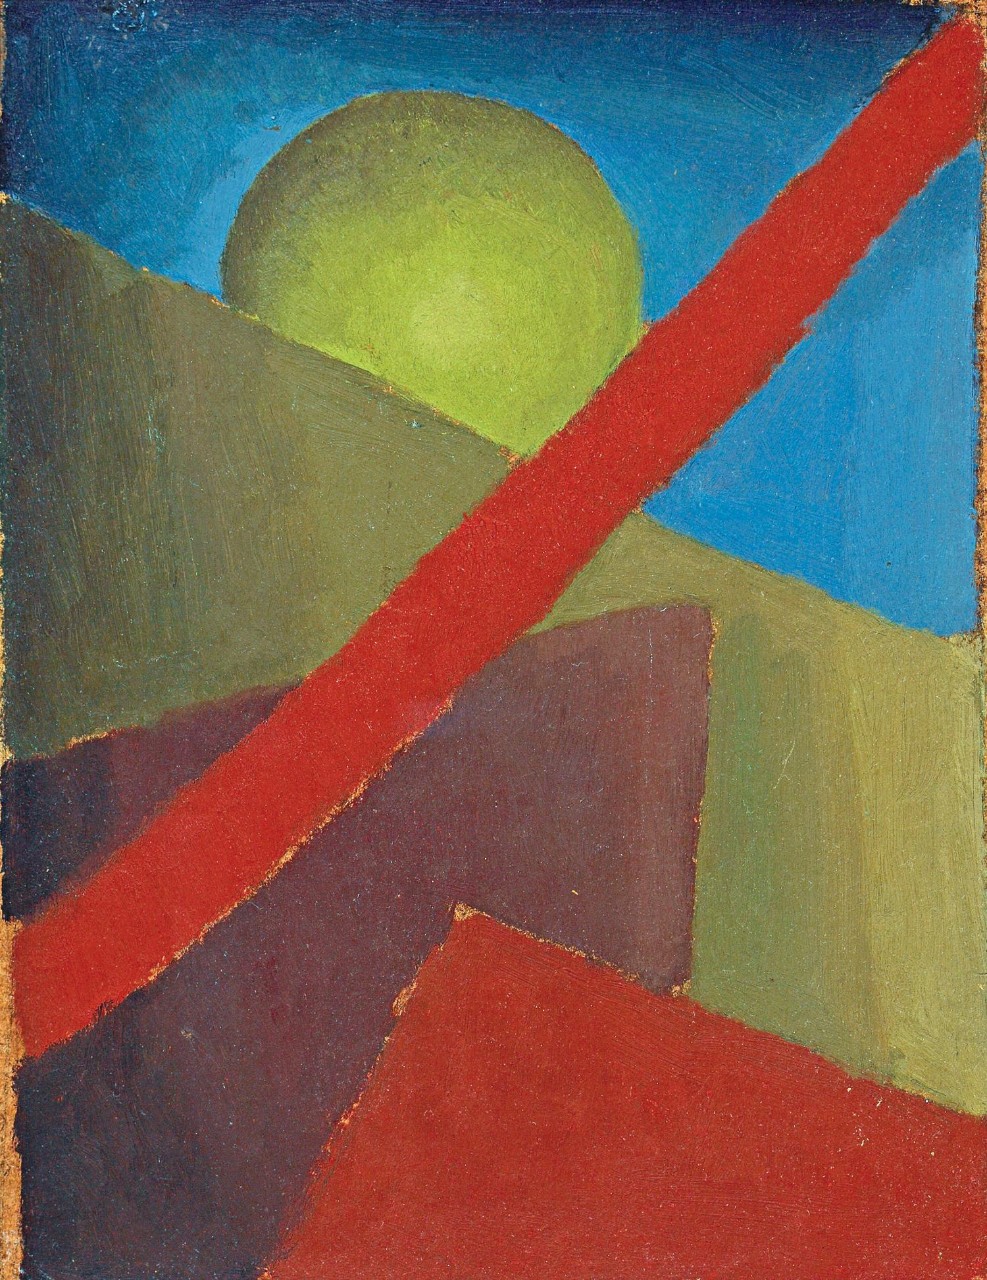 Esteban Lisa (1895–1983), Composición (Composition), c. 1935 (front) _ oil on cardboard, 30 x 23 cm, private collection © Fundación Esteban Lisa